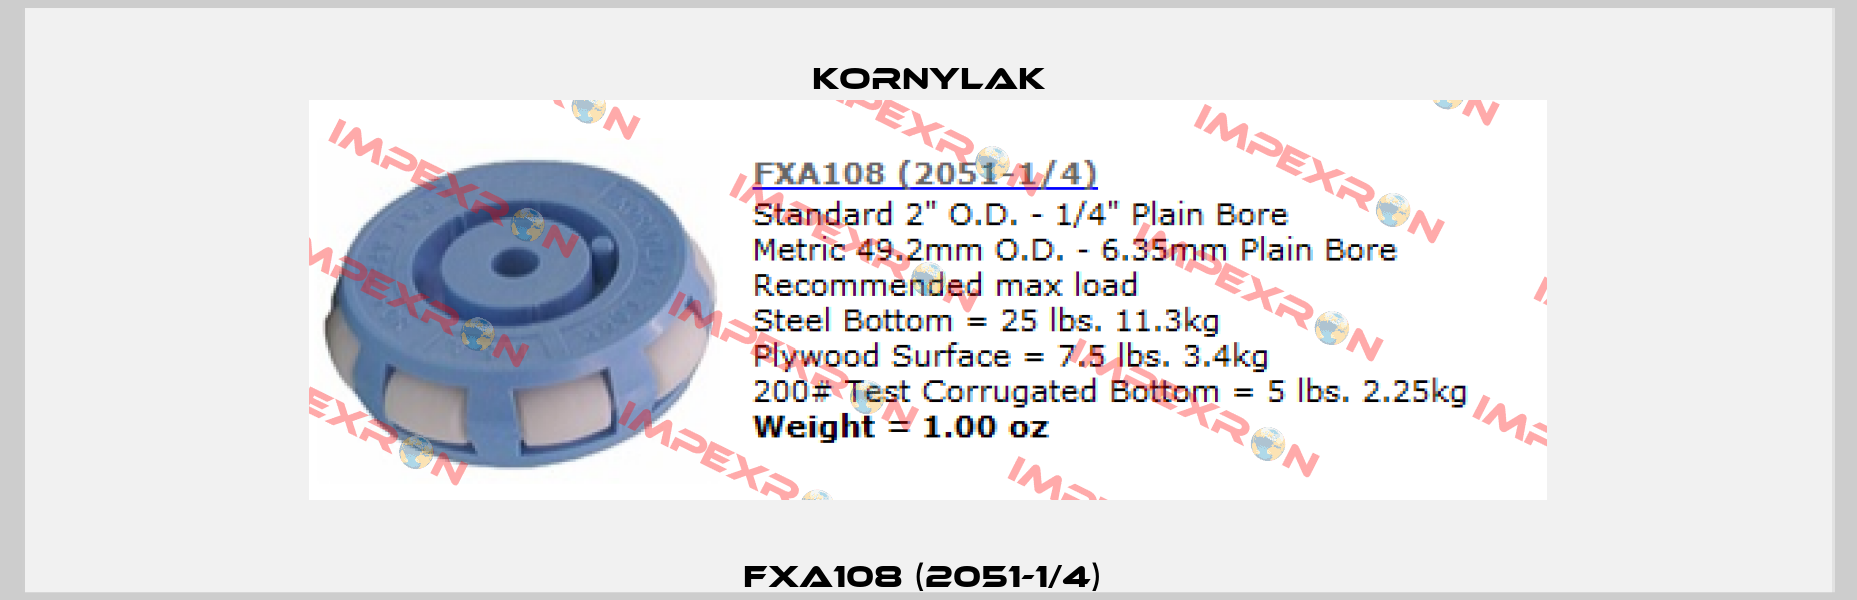 FXA108 (2051-1/4)  Kornylak